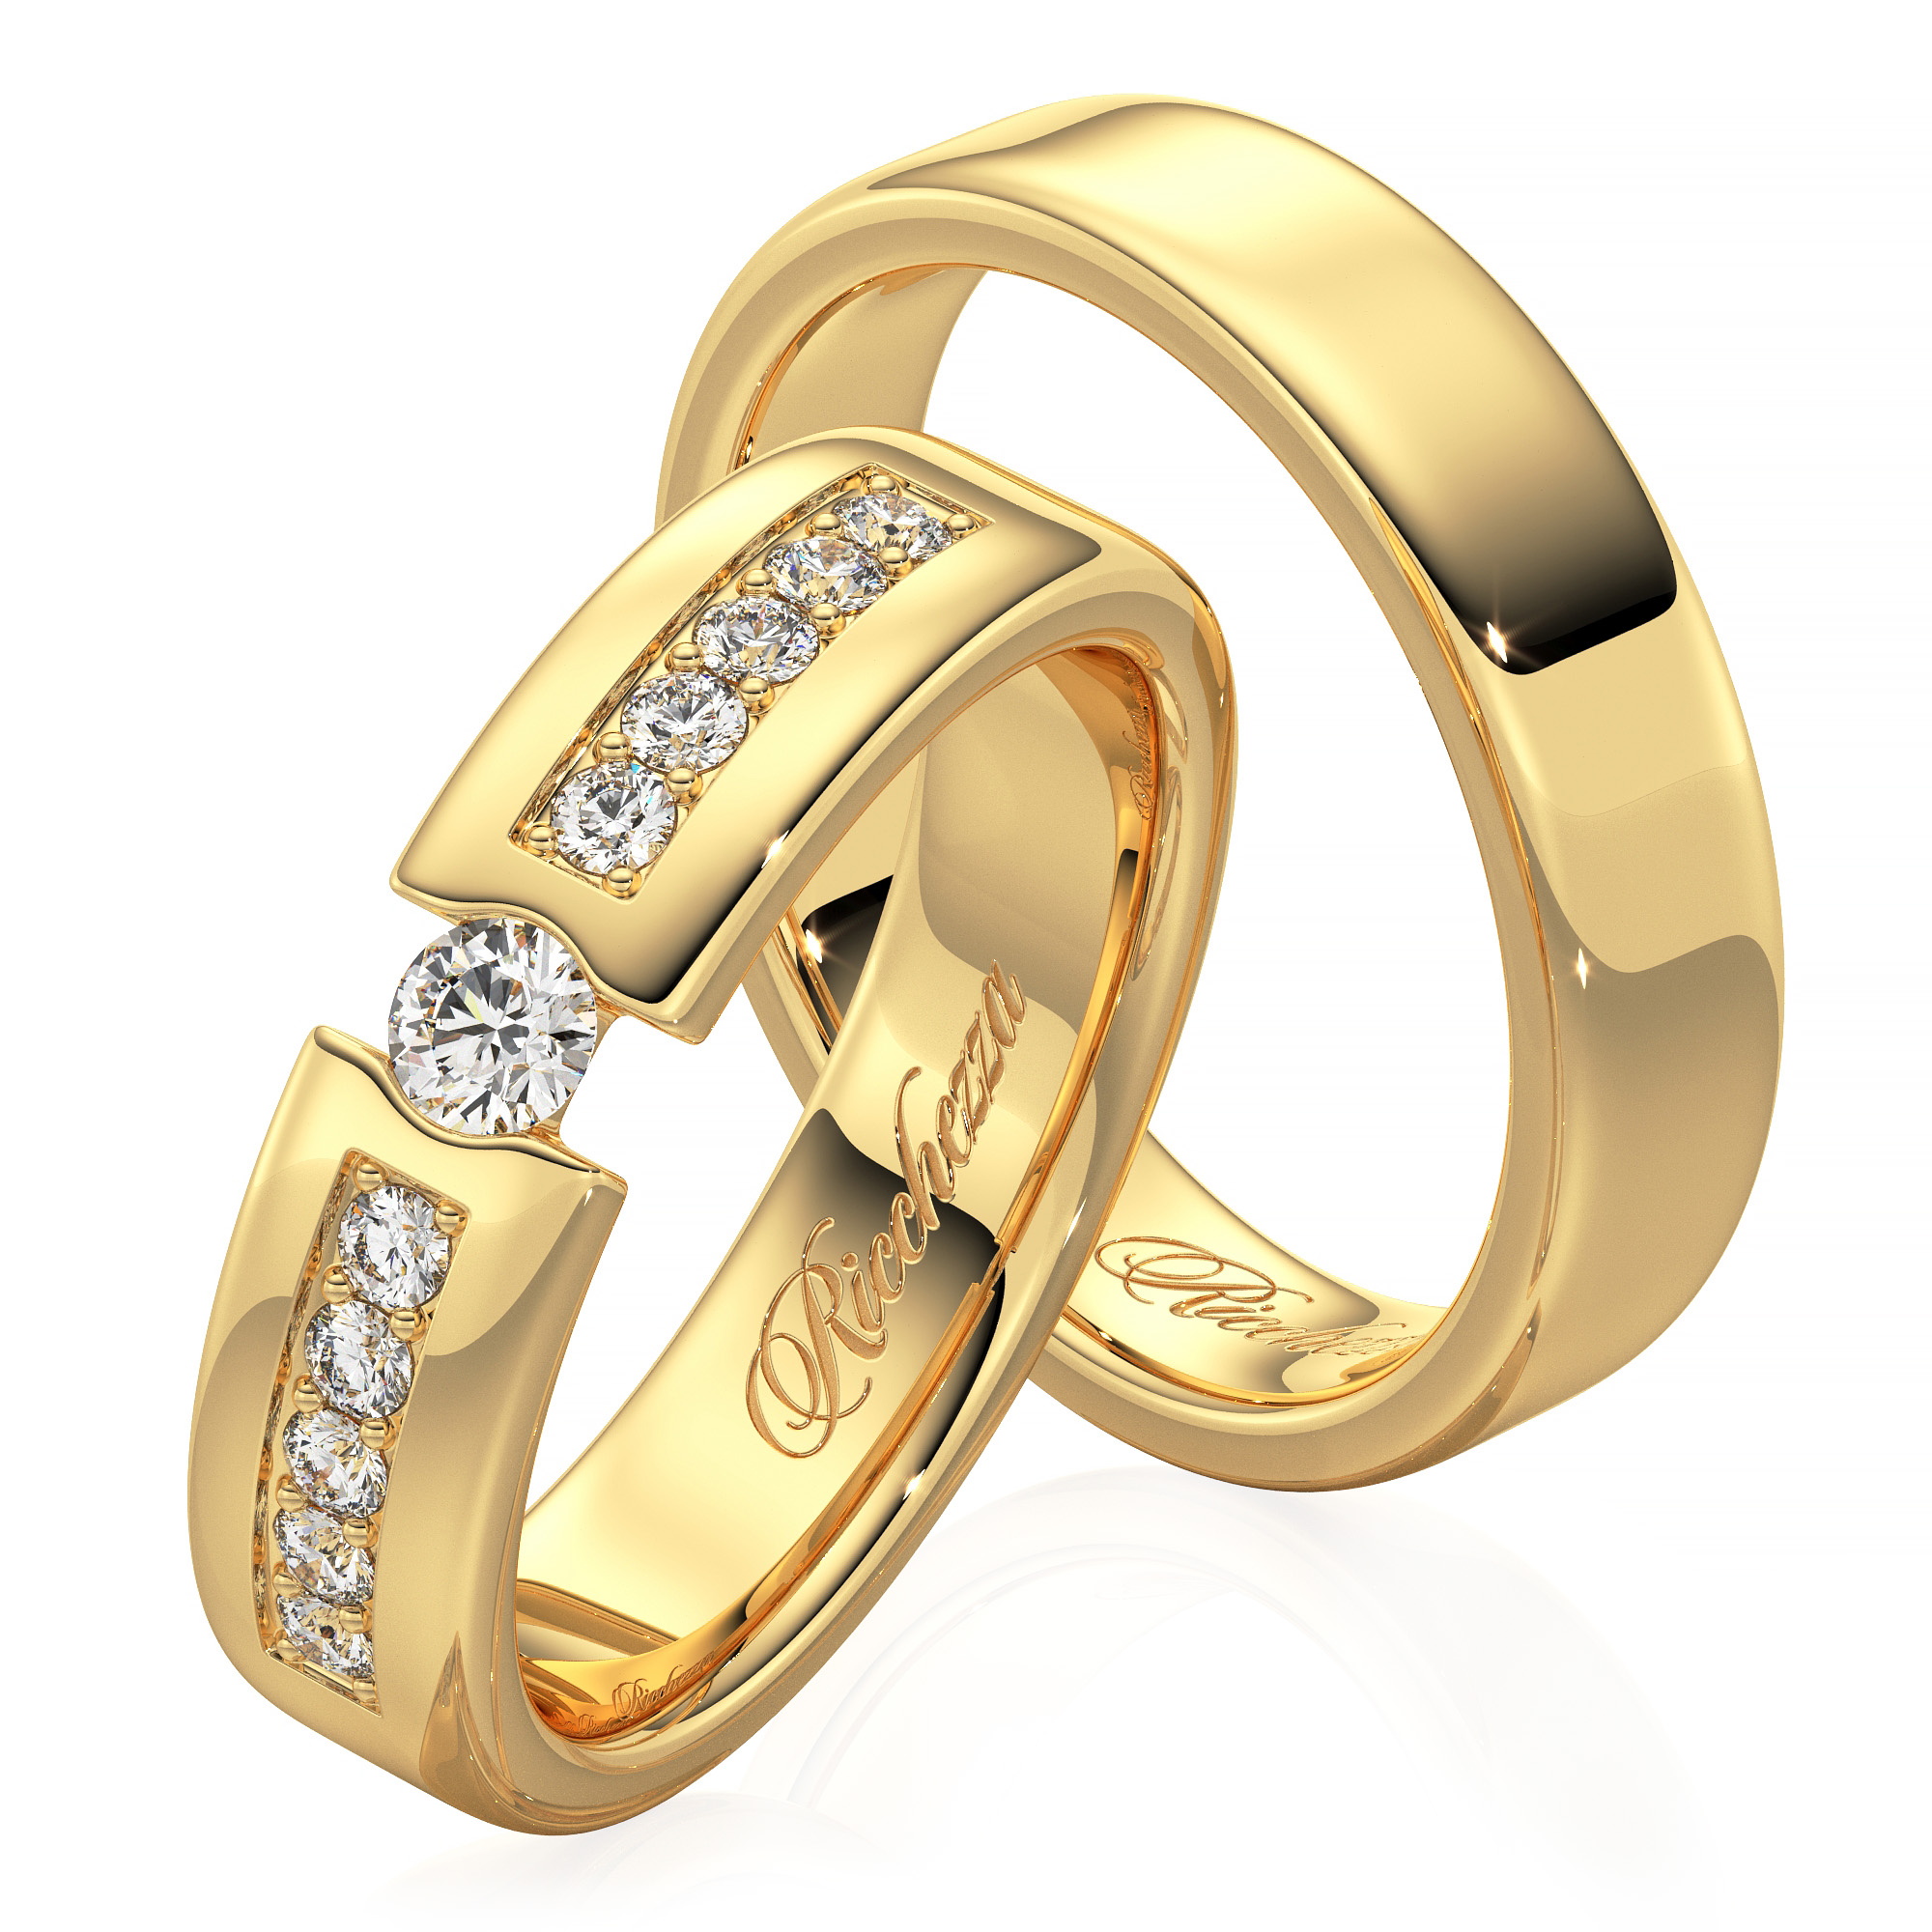 Золотые кольцо обручальное женские цена. Обручальные кольца парные золотые Санлайт. Санлайт обручальные кольца парные. Золото Санлайт обручалка кольца. Санлайт кольца обручальные золотые.